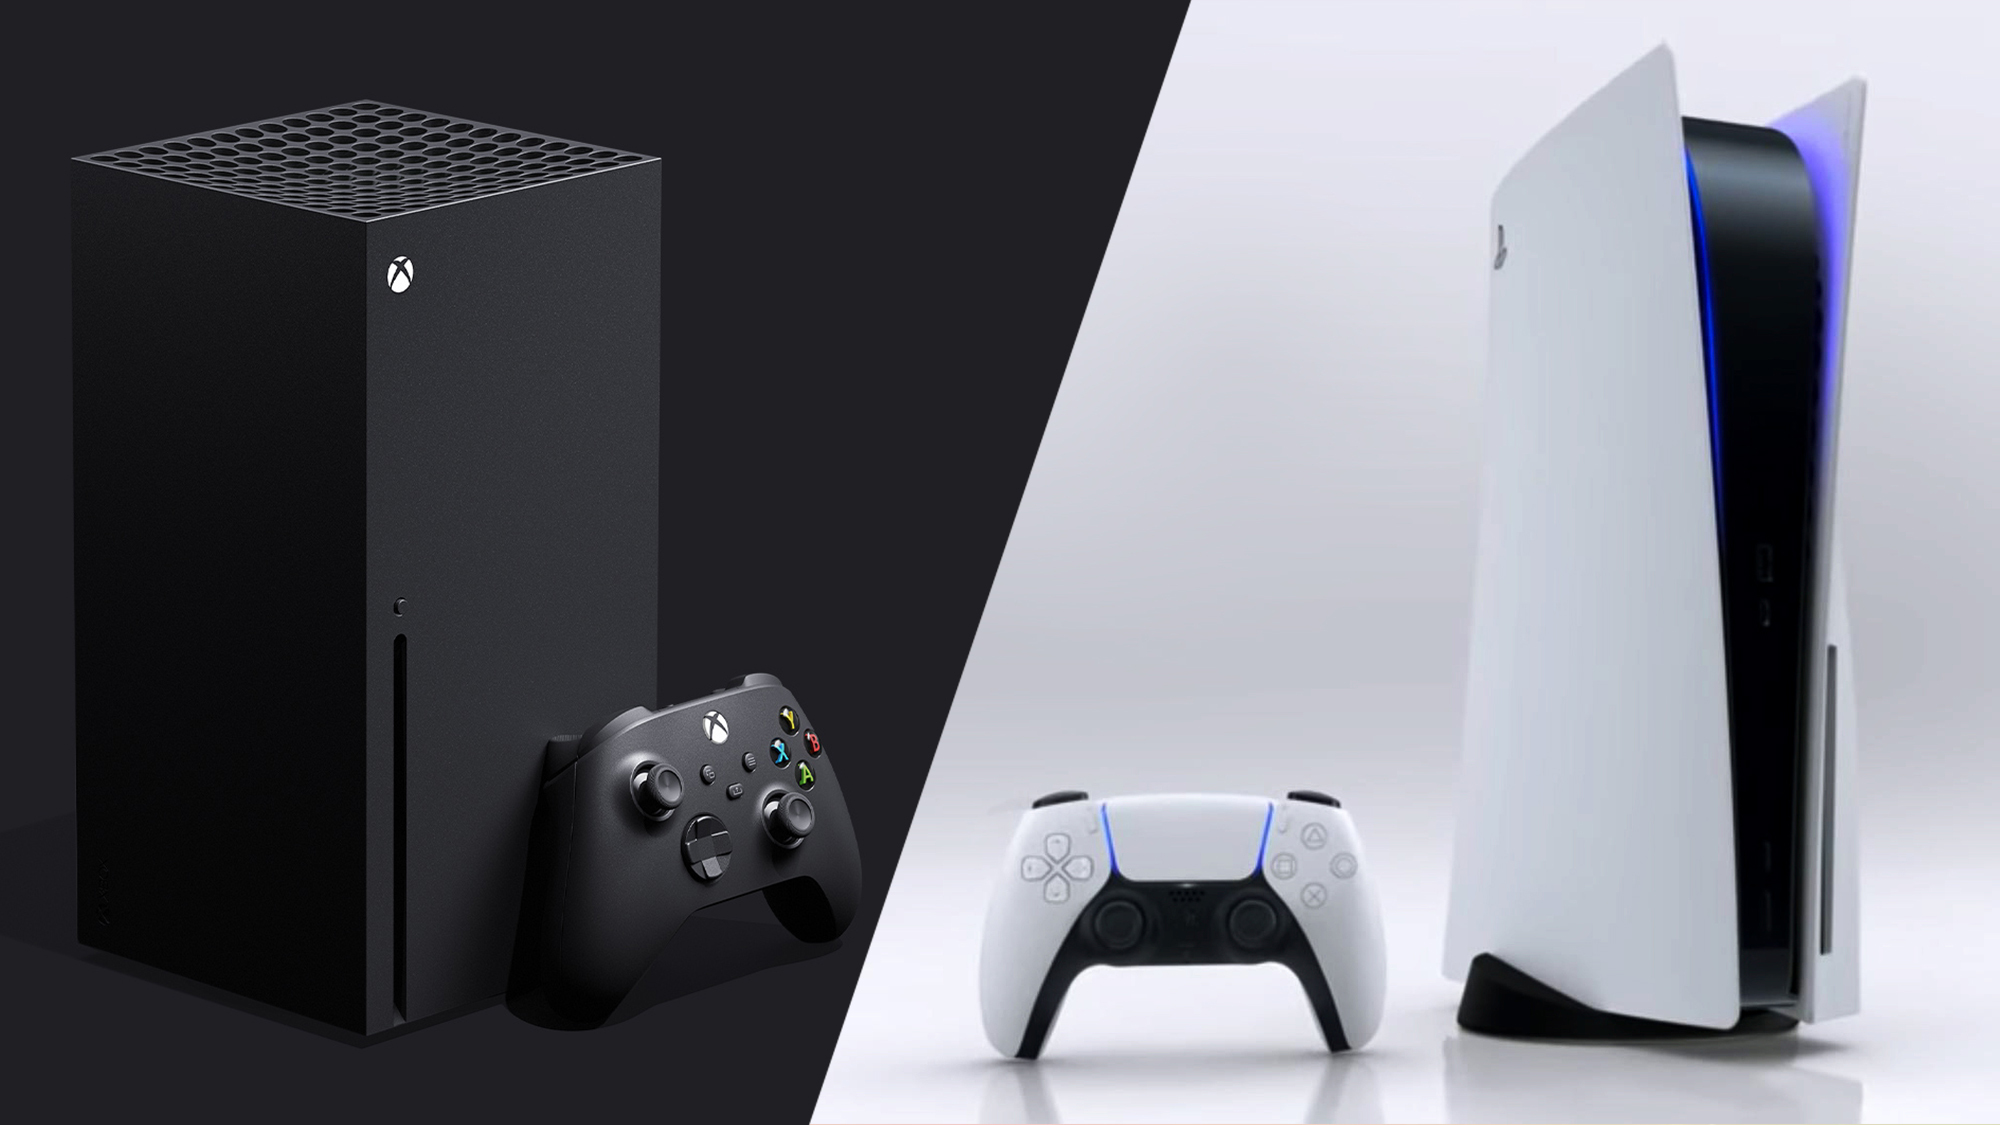 O fundador da Valve afirma que o Xbox Series X é um console melhor que o PlayStation 5